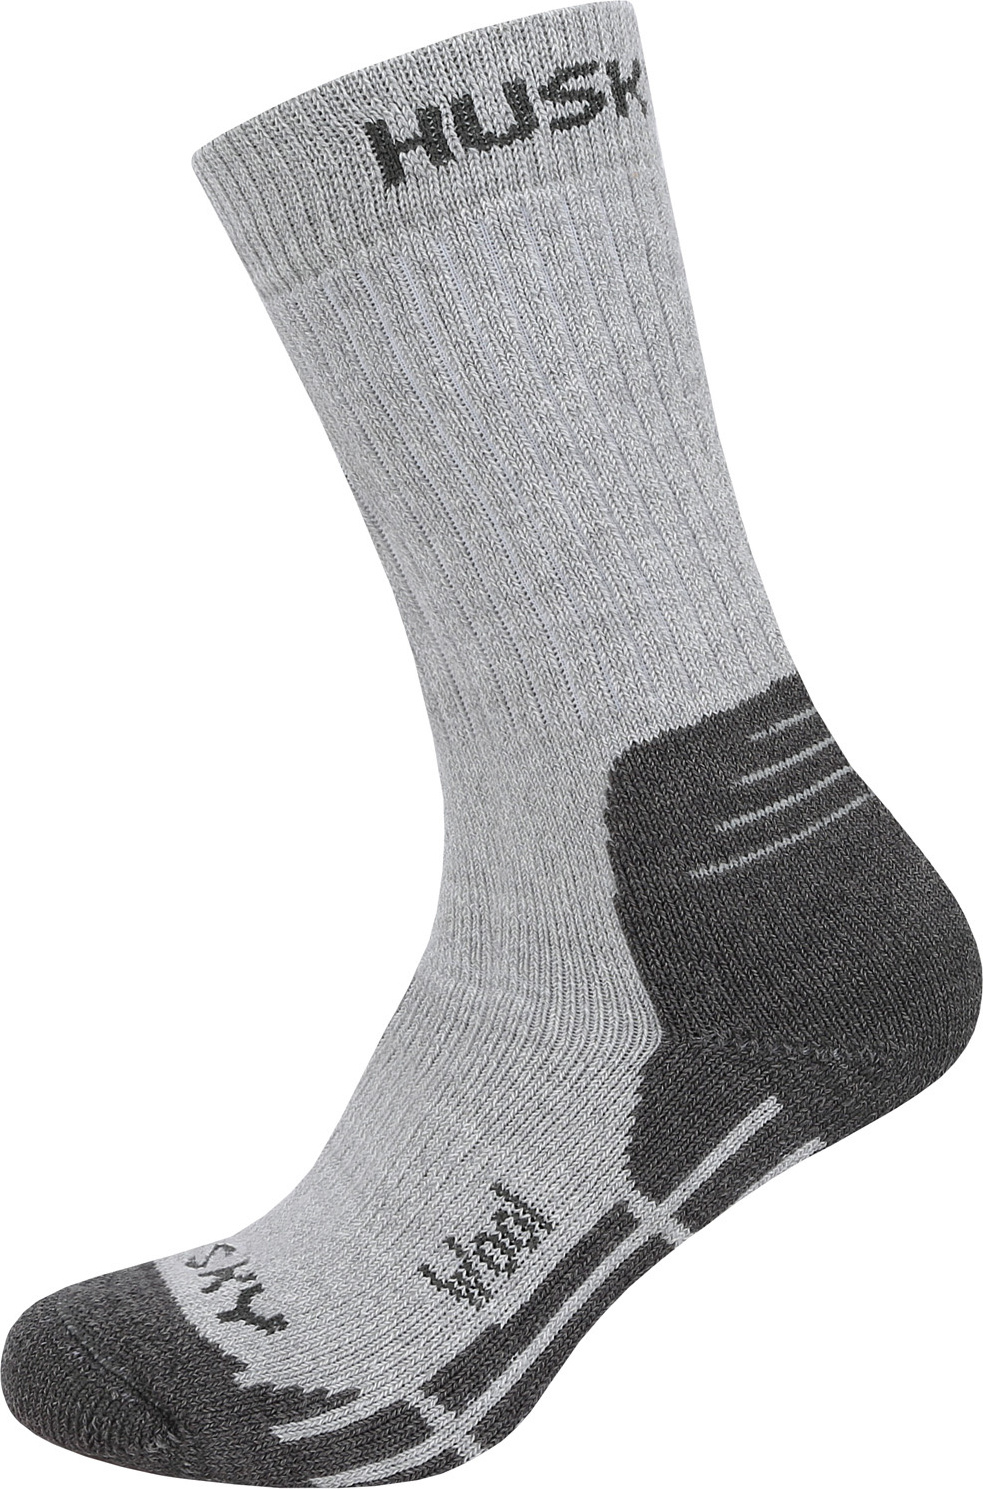 Ponožky HUSKY All Wool sv. šedá Velikost: M (36-40)